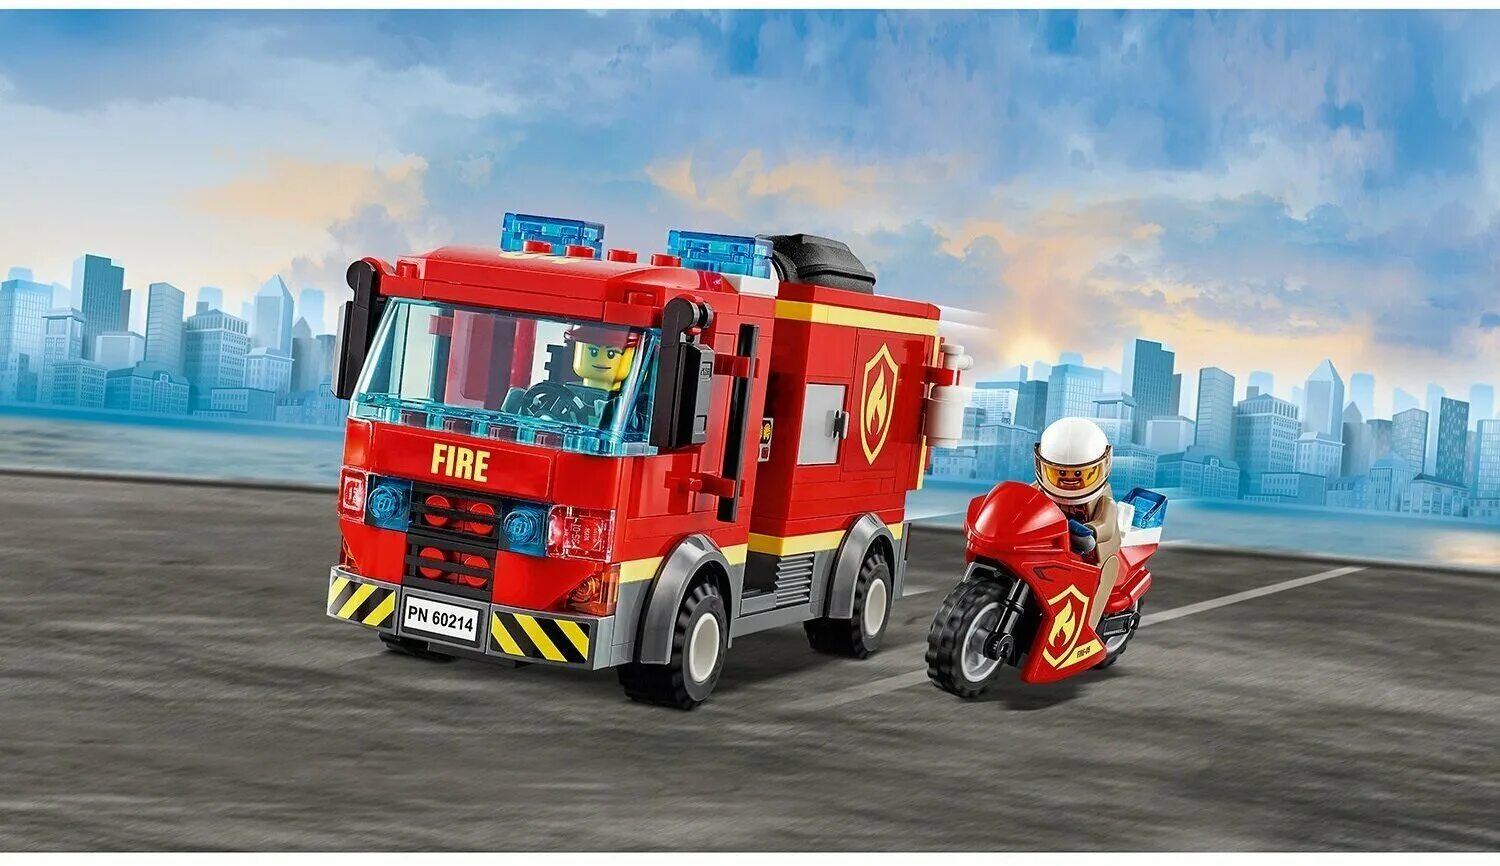 Сити пожарная. LEGO City 60214. LEGO 60214. Лего Сити 60214. Конструктор LEGO City 60214 пожар в бургер-кафе.